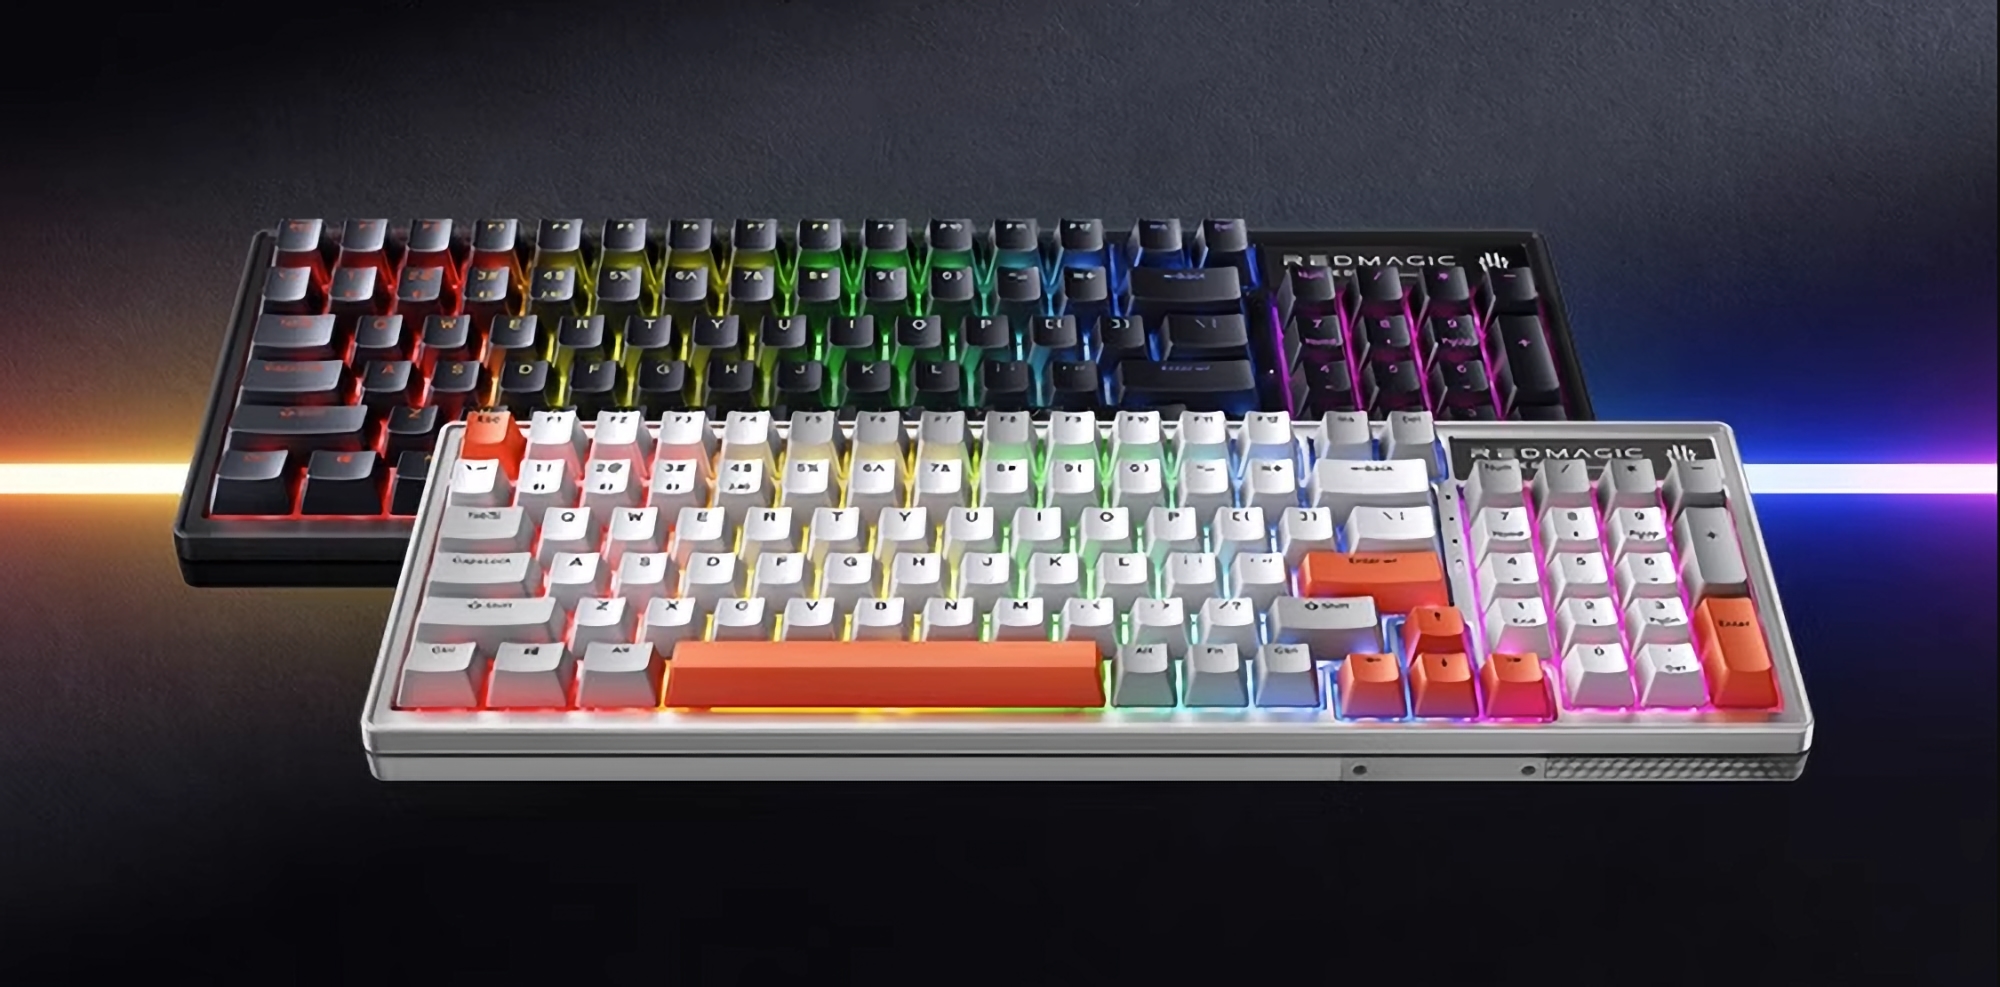 nubia prezentuje e-sportową klawiaturę mechaniczną Red Magic z wymiennymi klawiszami, podświetleniem RGB i czasem reakcji 1 ms